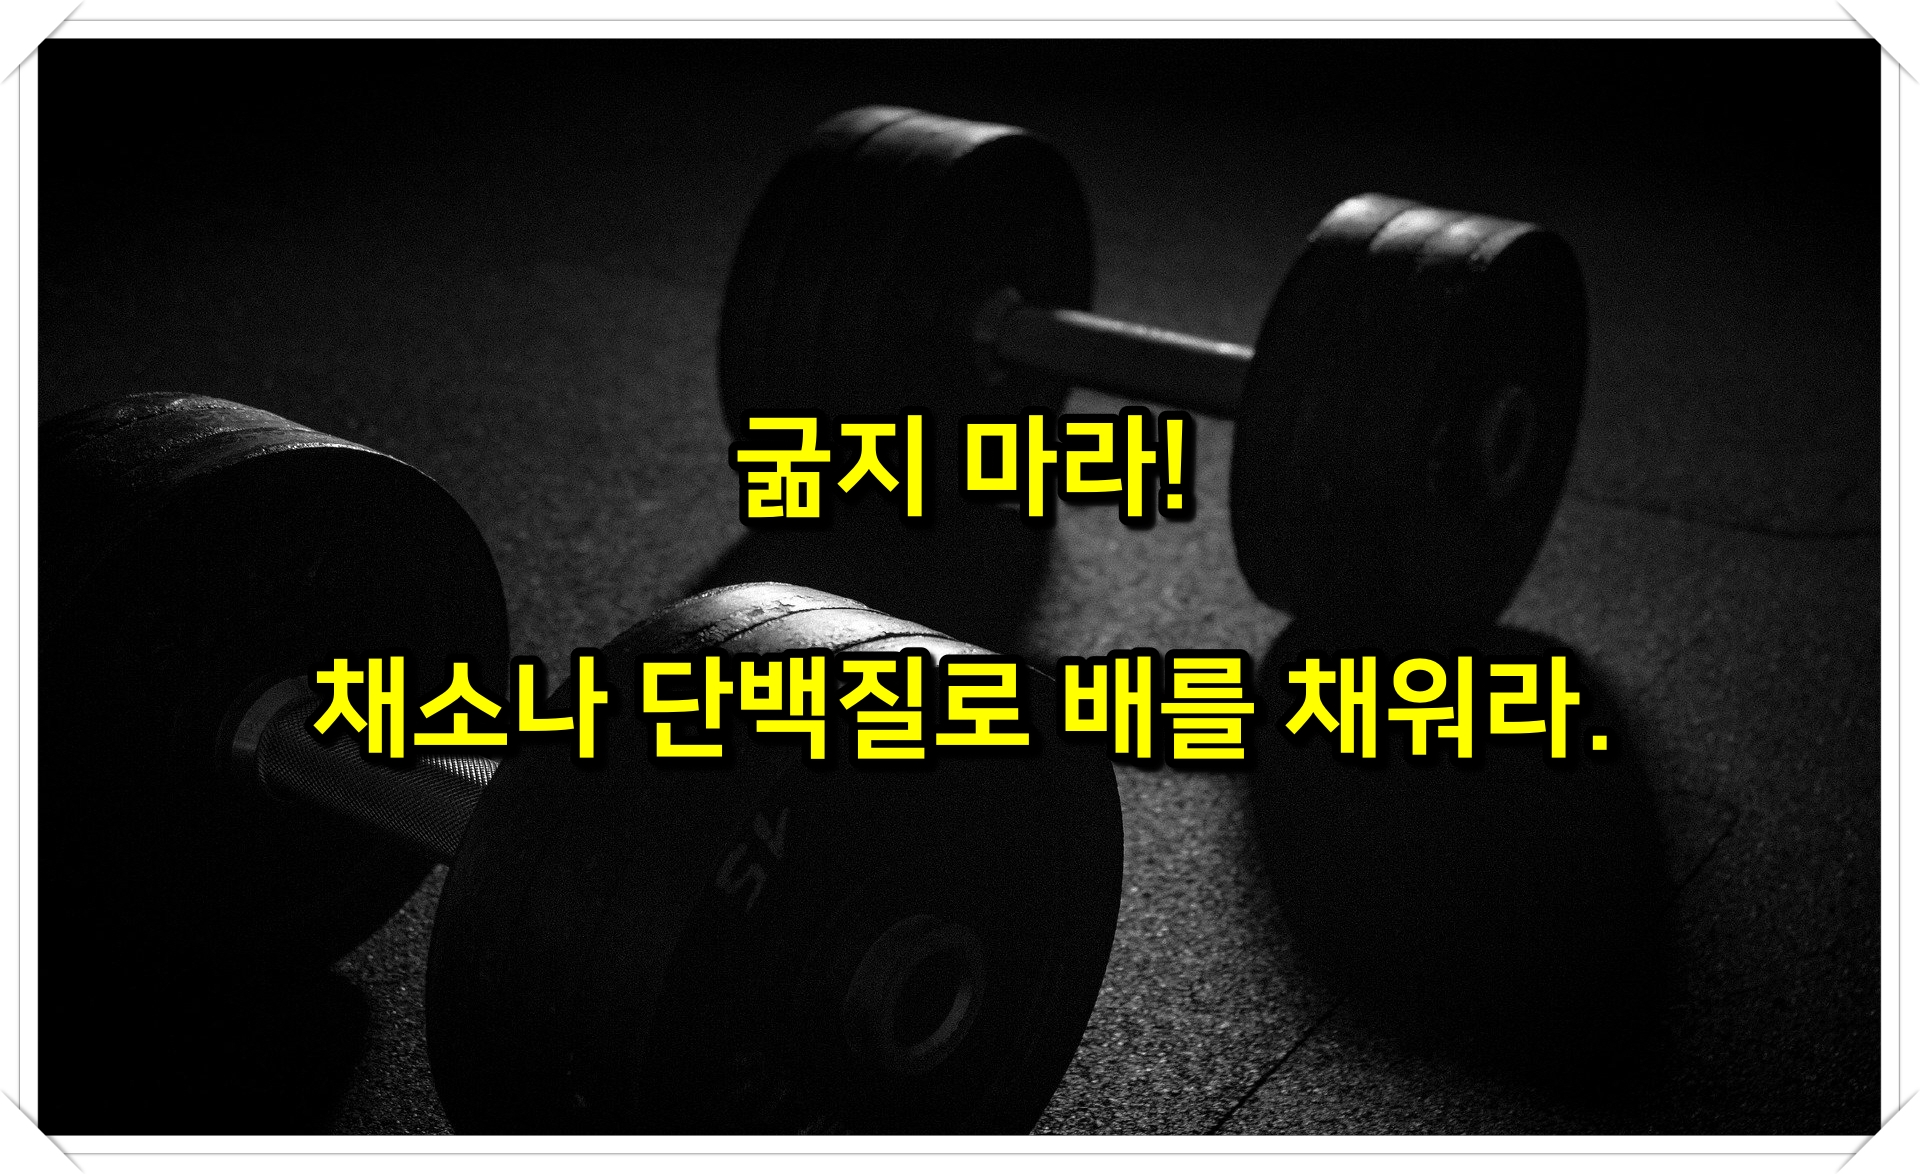 김종국 헬스 운동 다이어트 어록 명언 팁 5